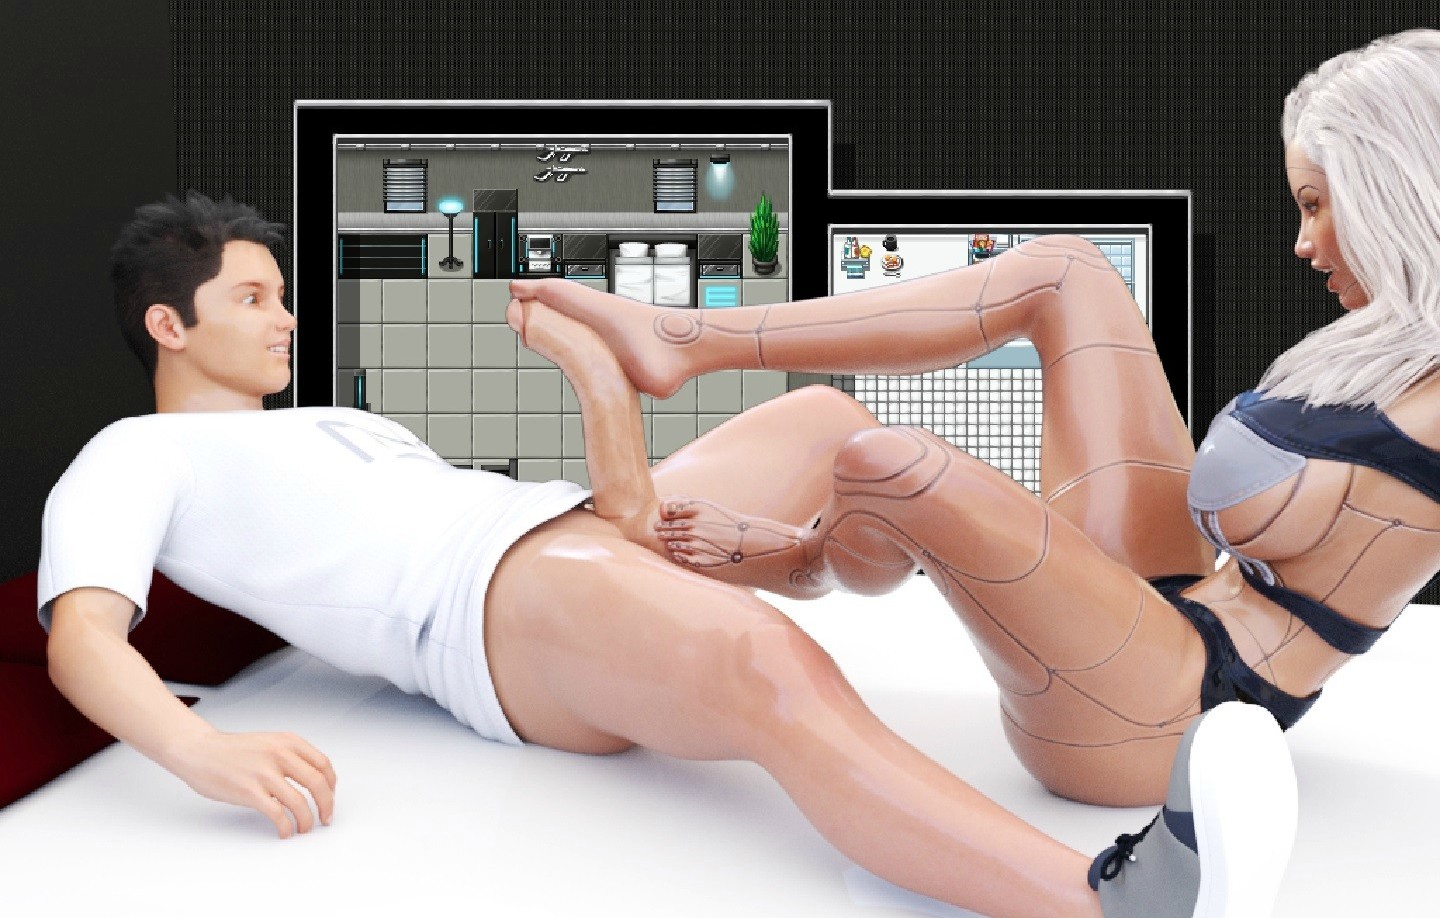 Медицинские Игры В Сексе Видео